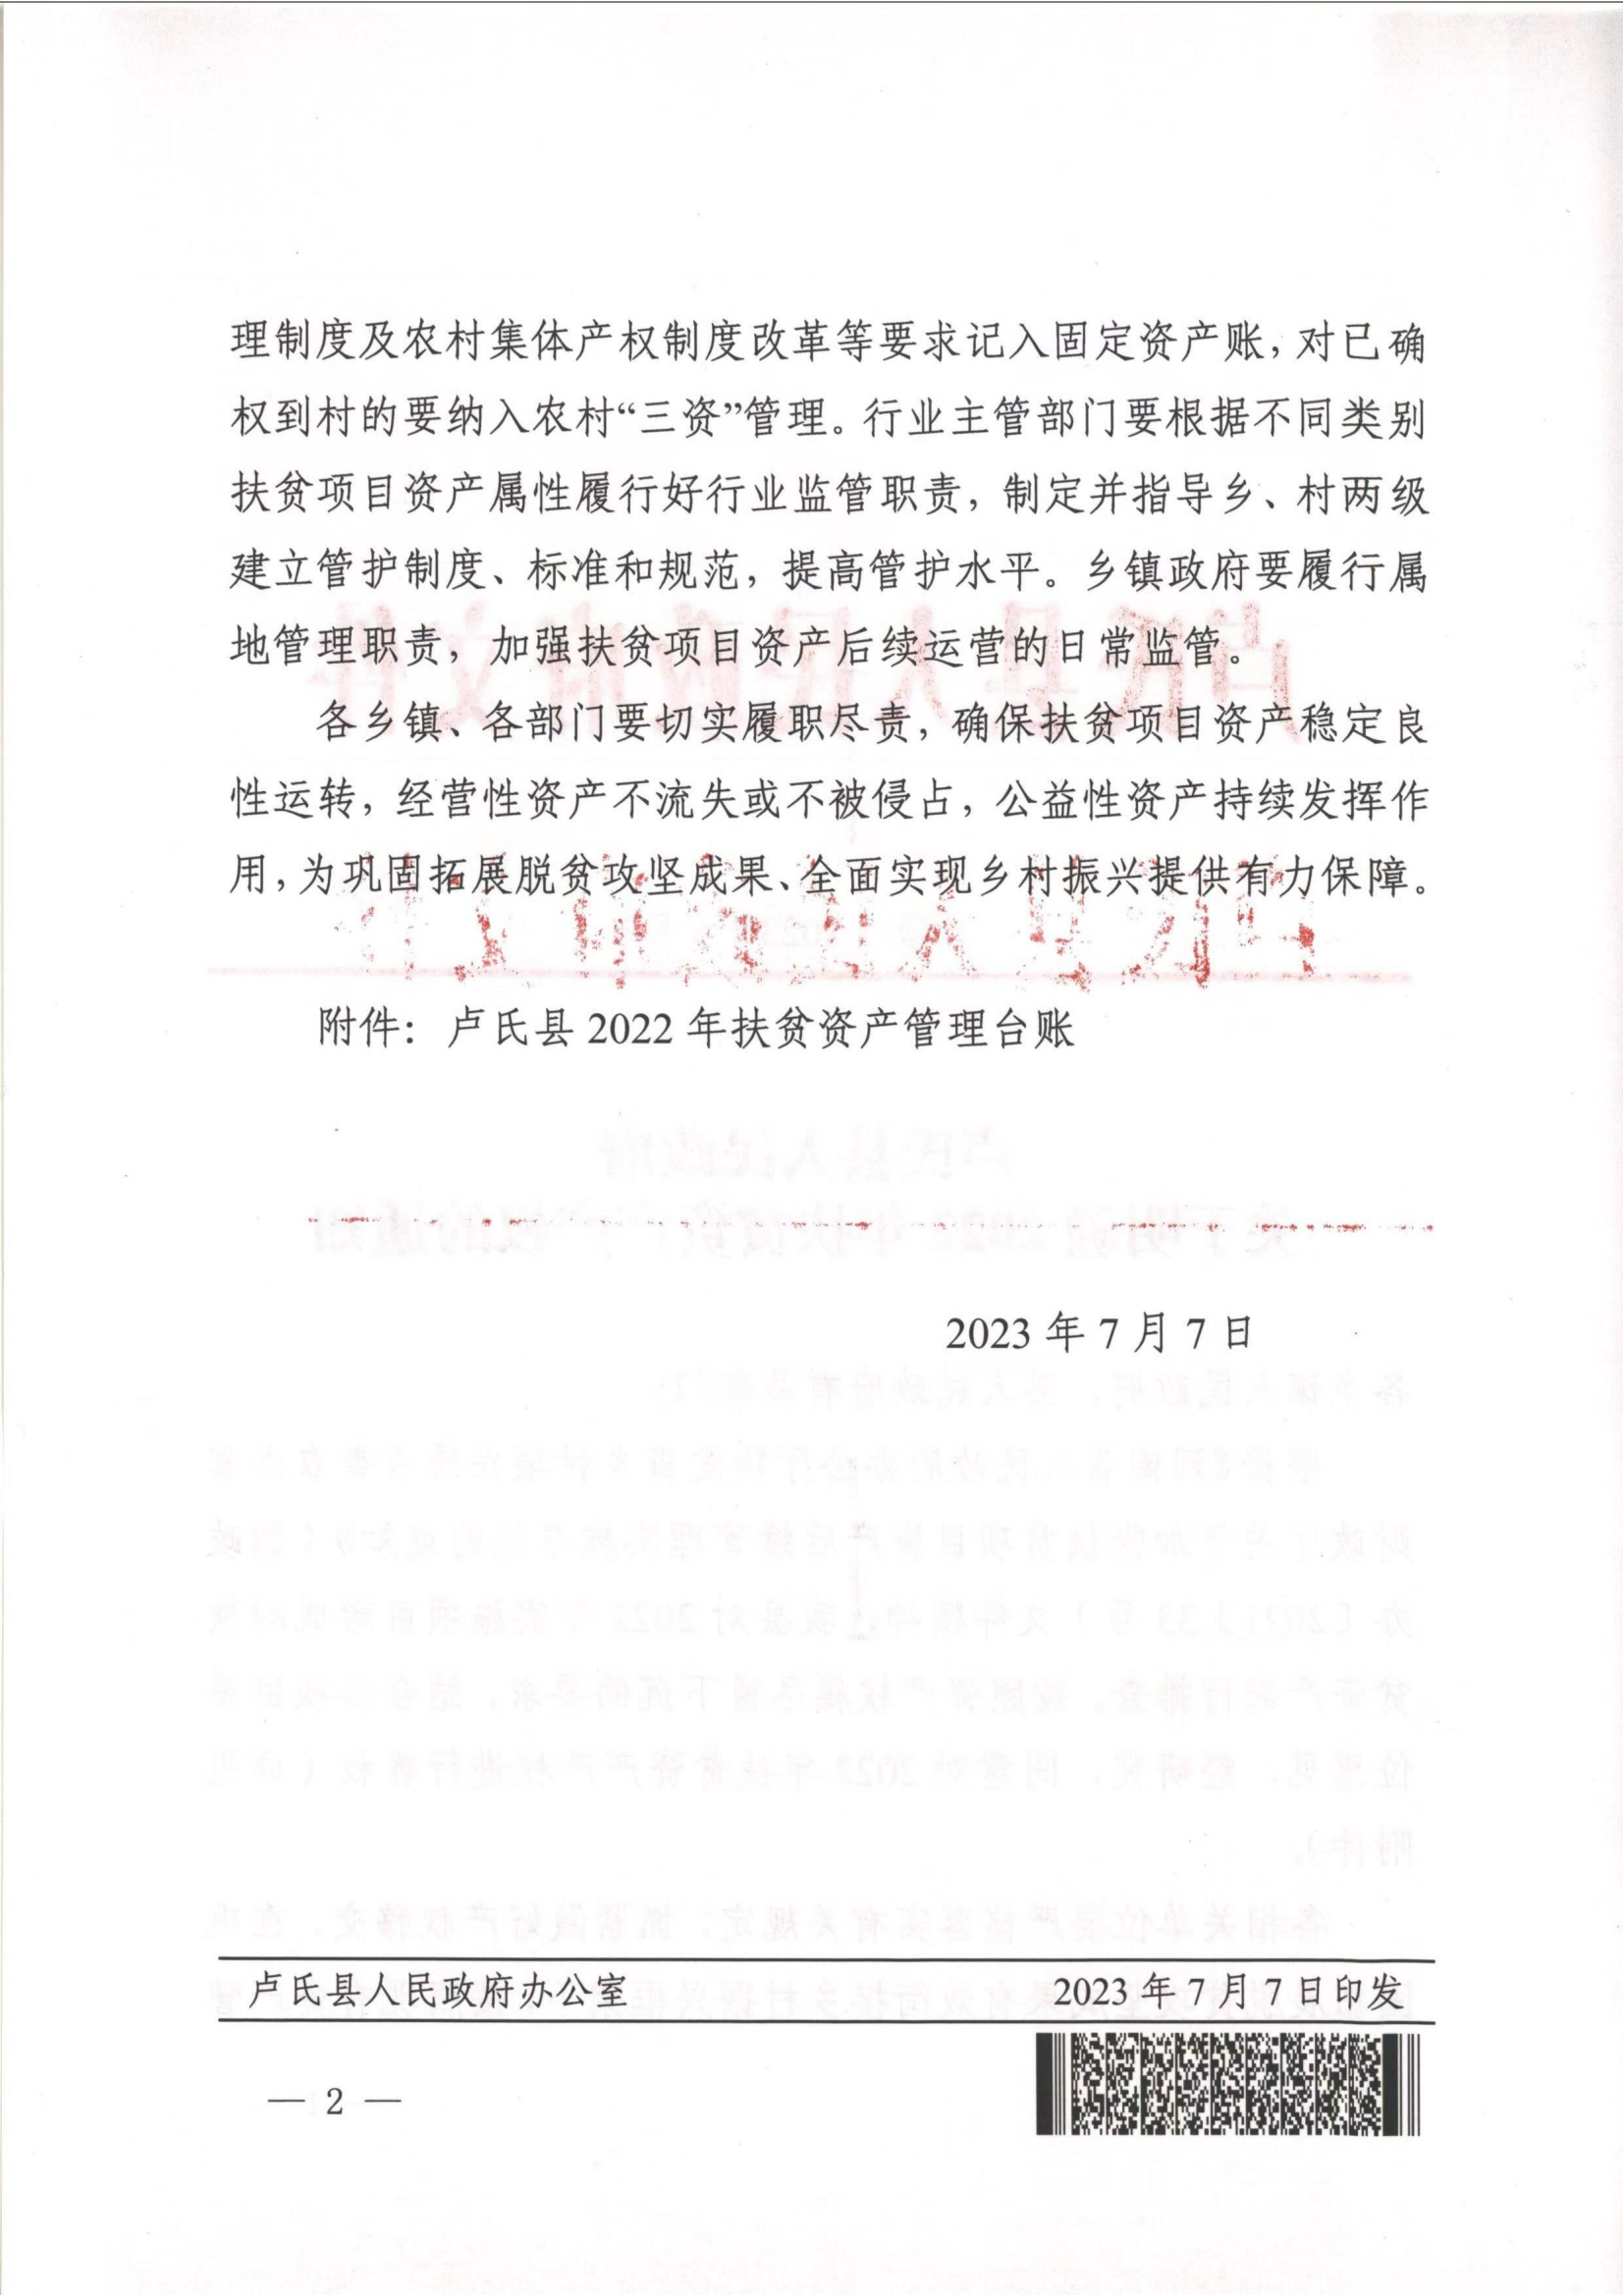 卢氏县2022年项目资产确权文件_01.png